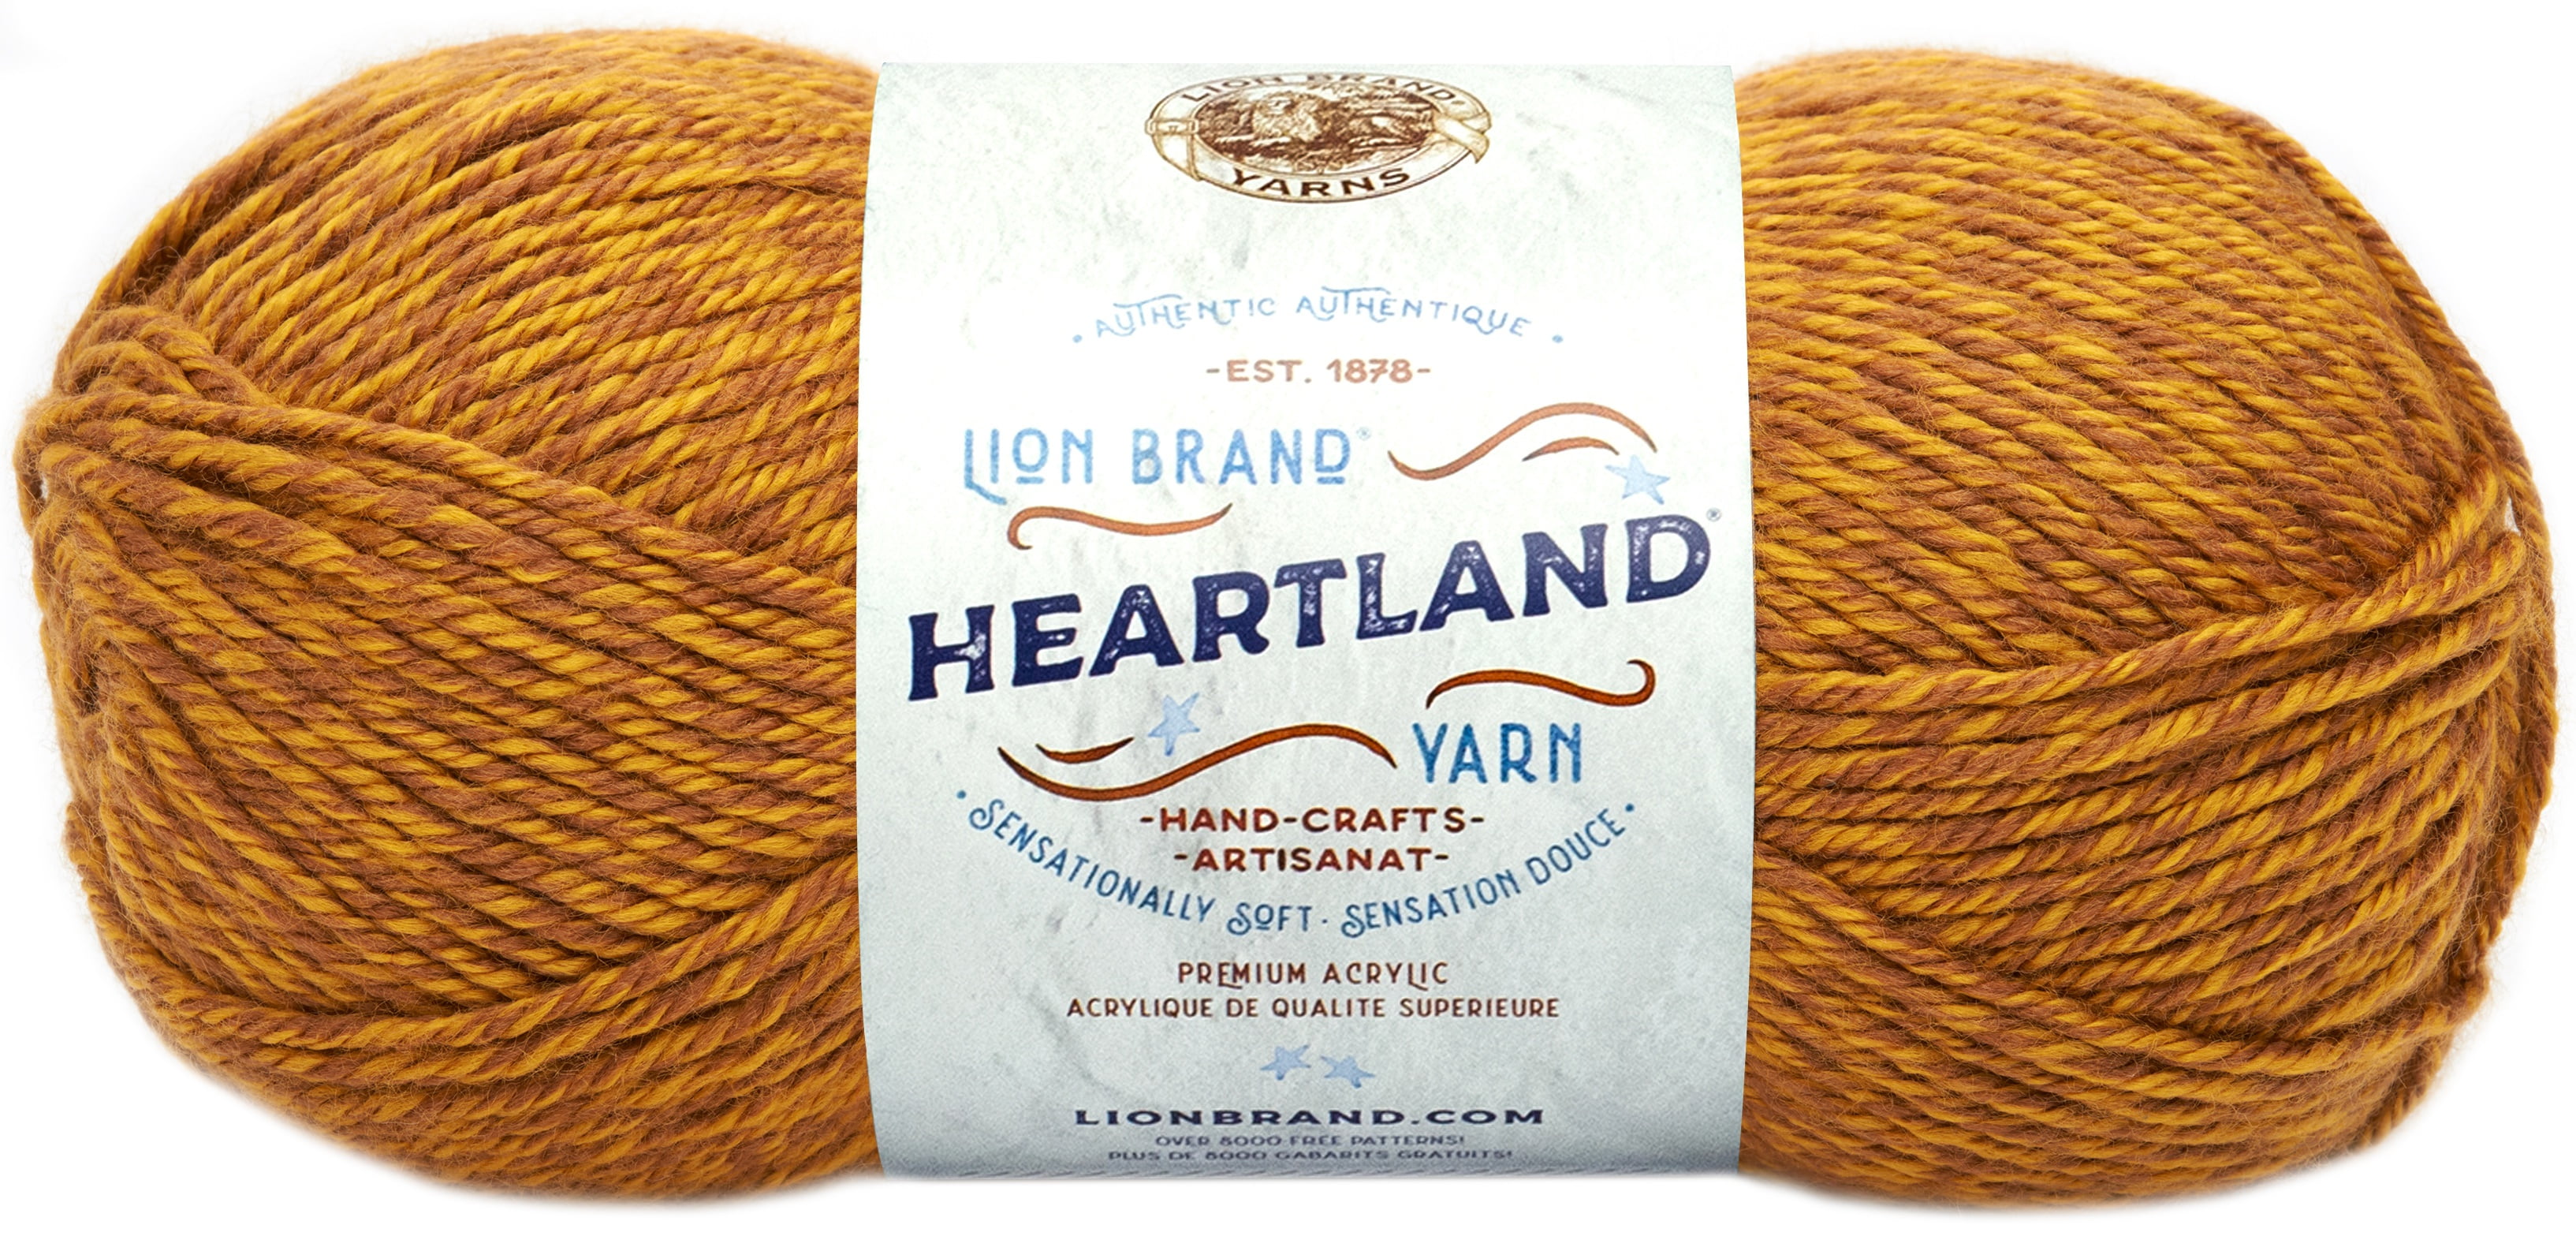 Lion Brand Heartland Yarn, Grand Canyon